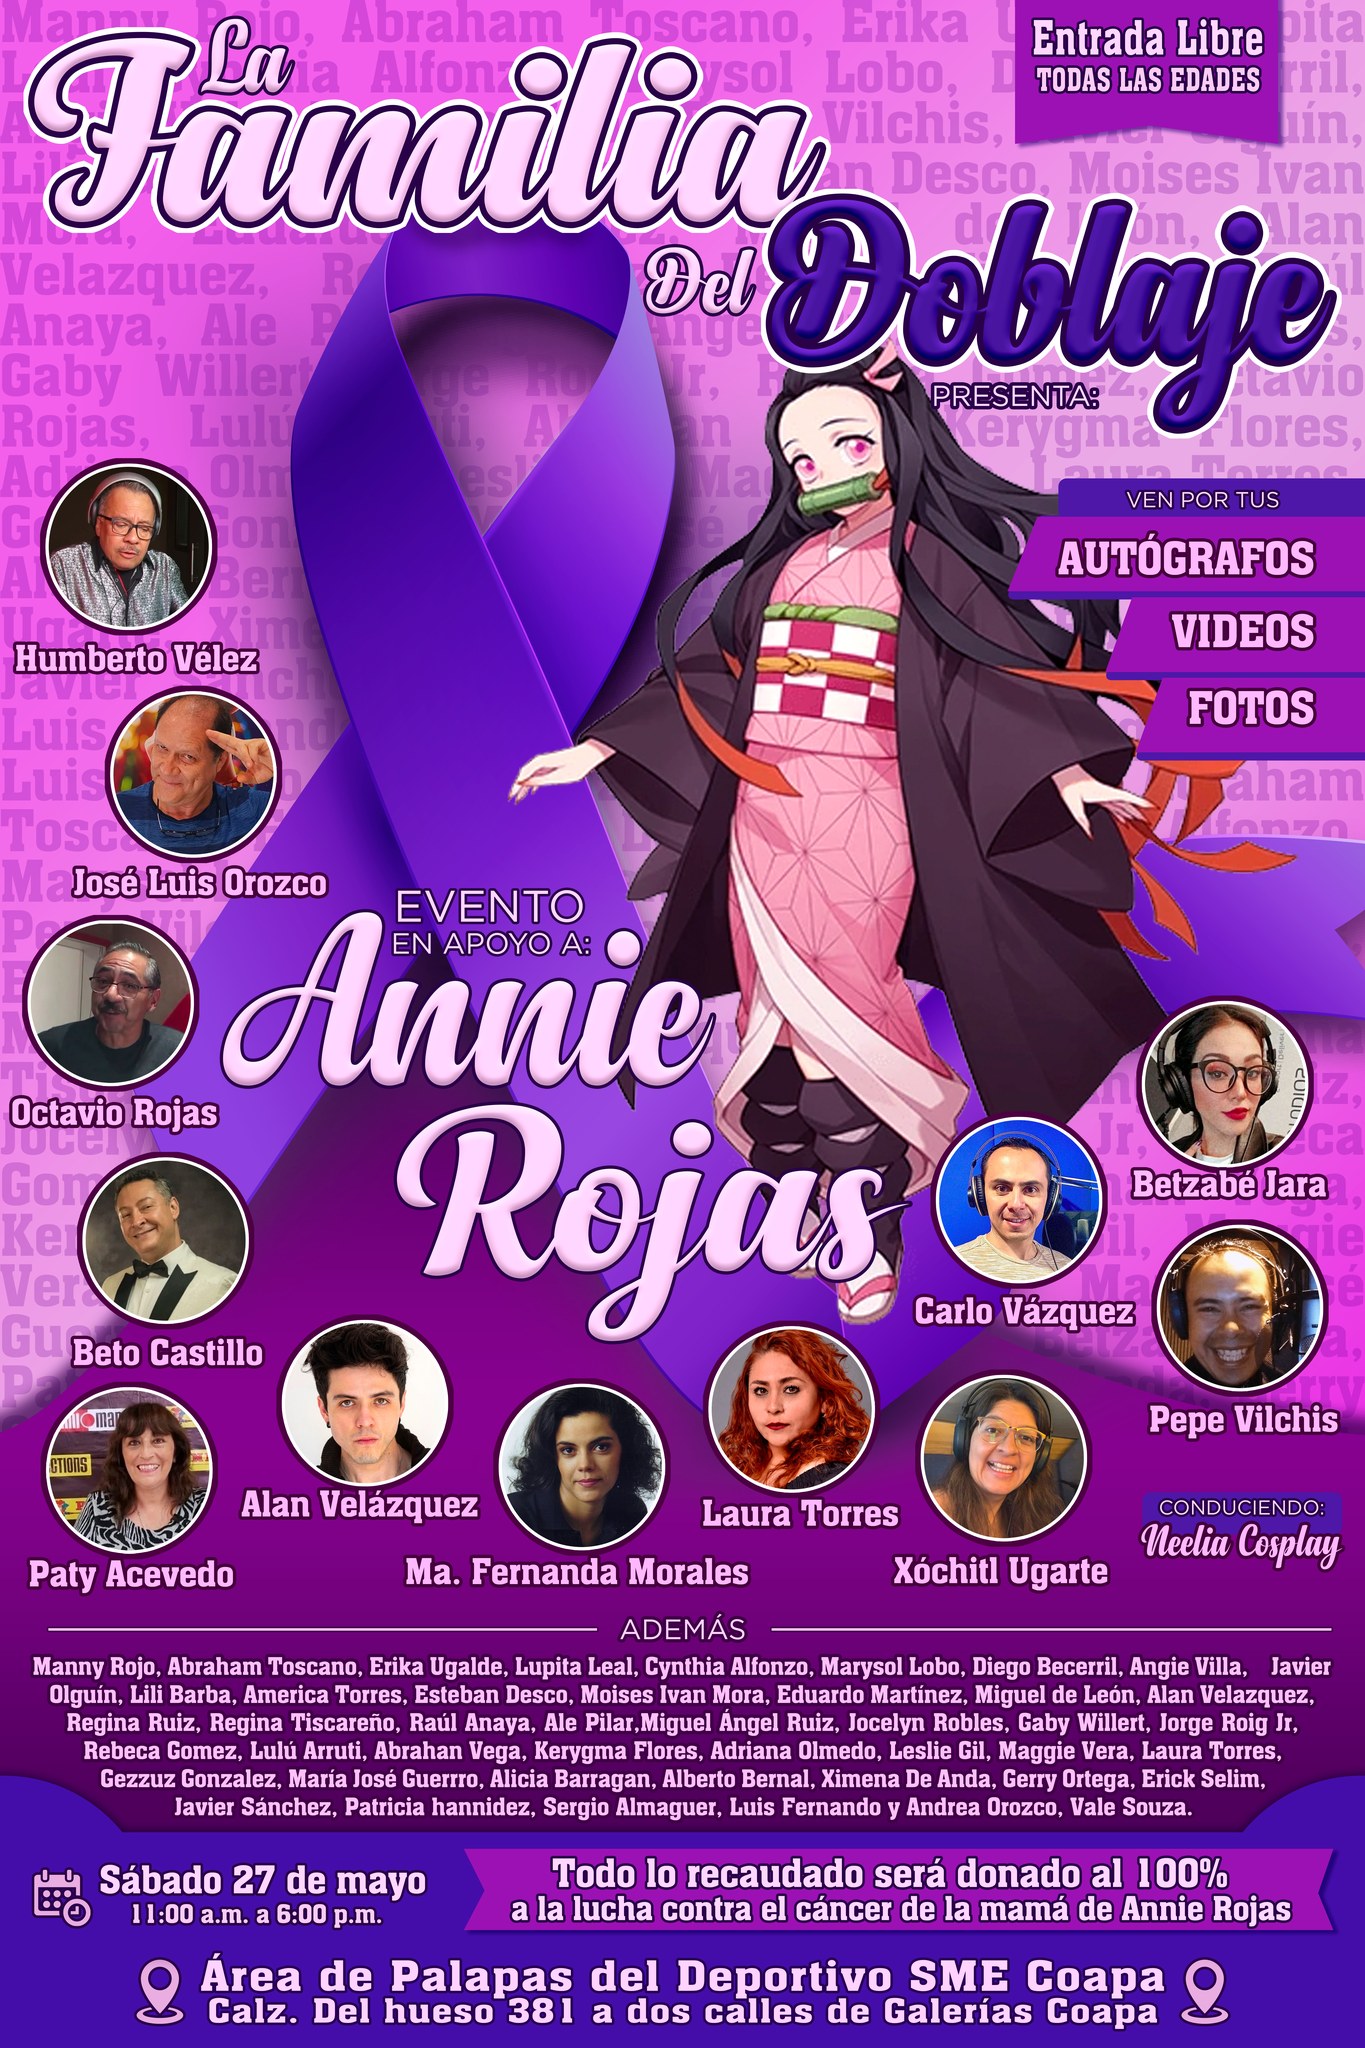 ¡Ñoños Unidos! Diversos fandoms se unen para apoyar a Annie Rojas 22